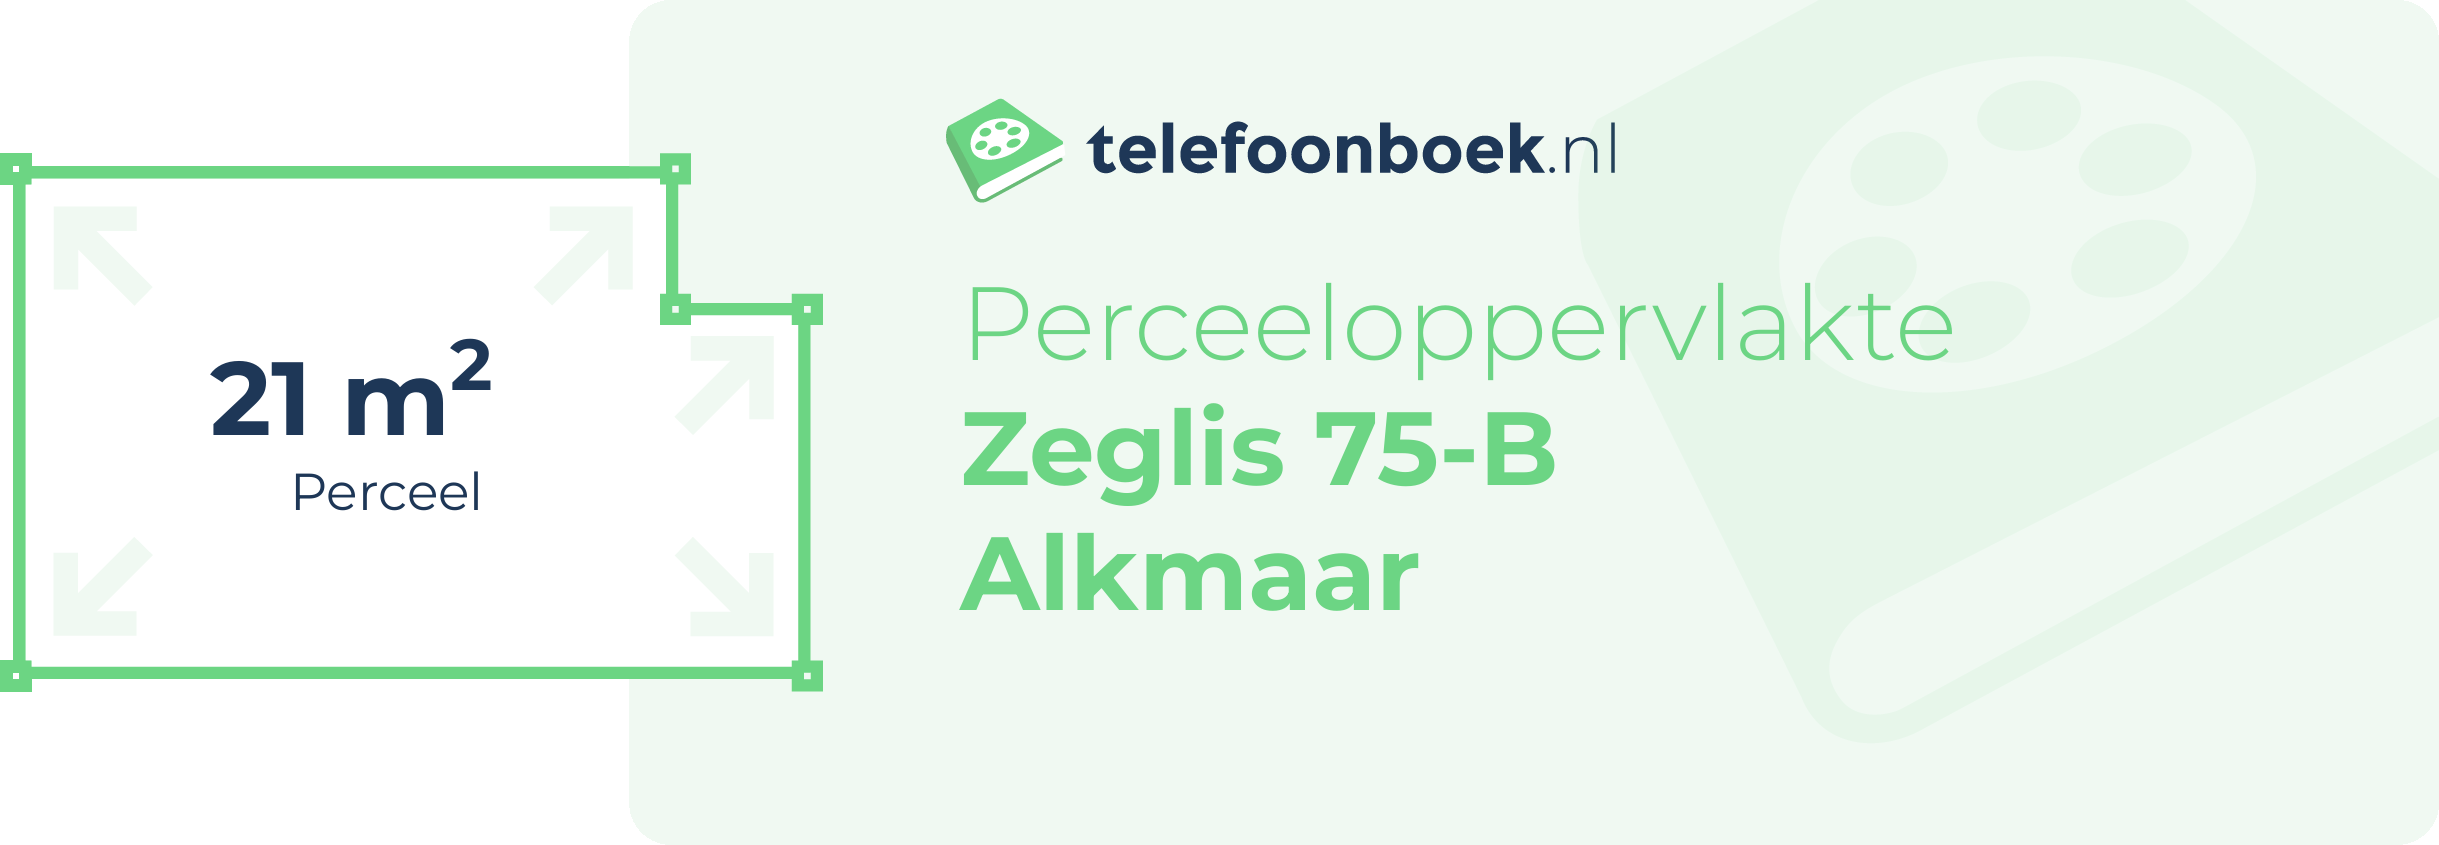 Perceeloppervlakte Zeglis 75-B Alkmaar